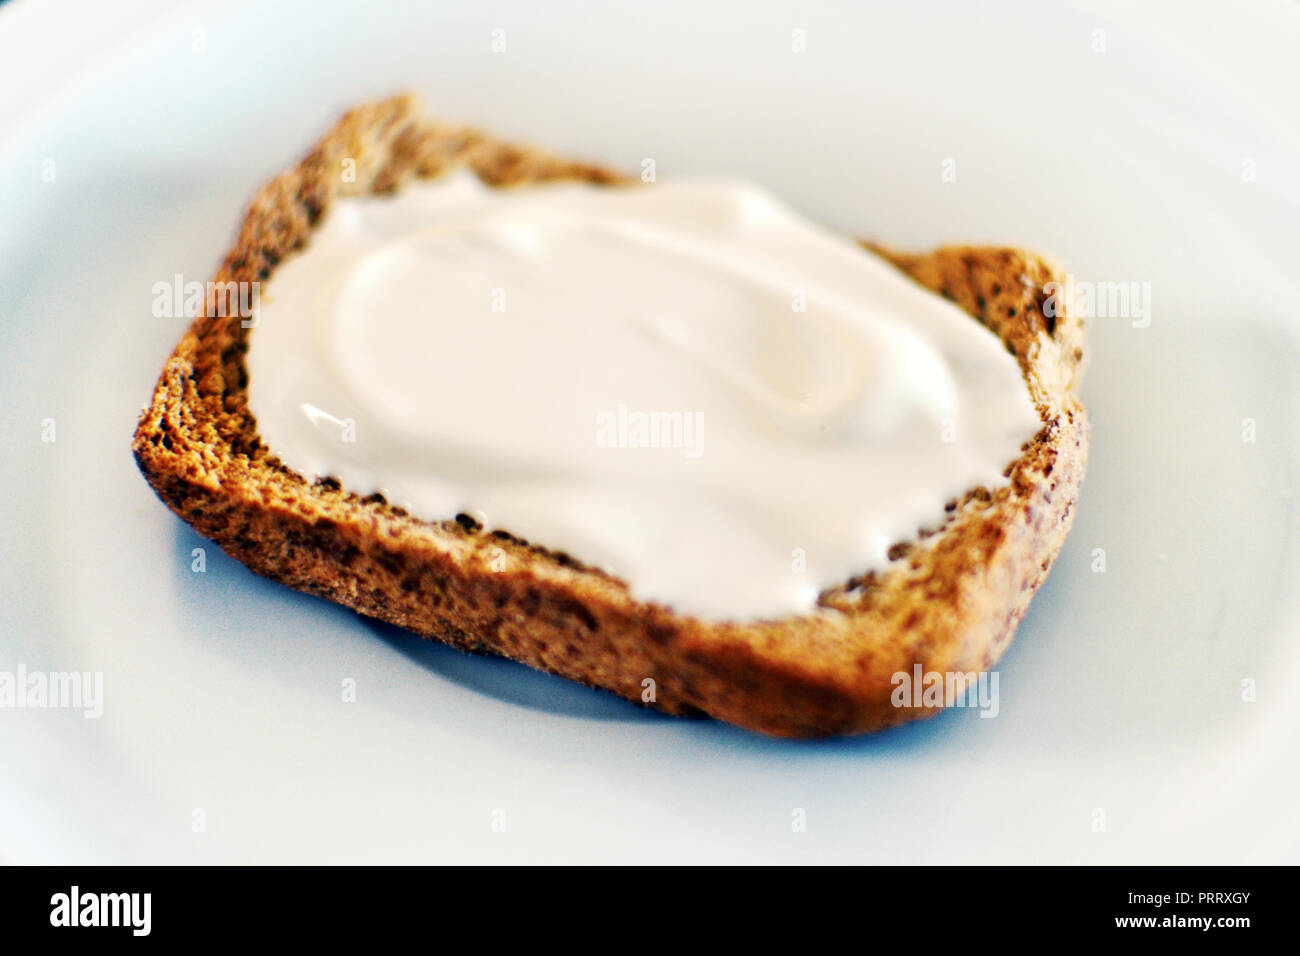 Tostadas de pan de grano entero con crema de queso Foto de stock